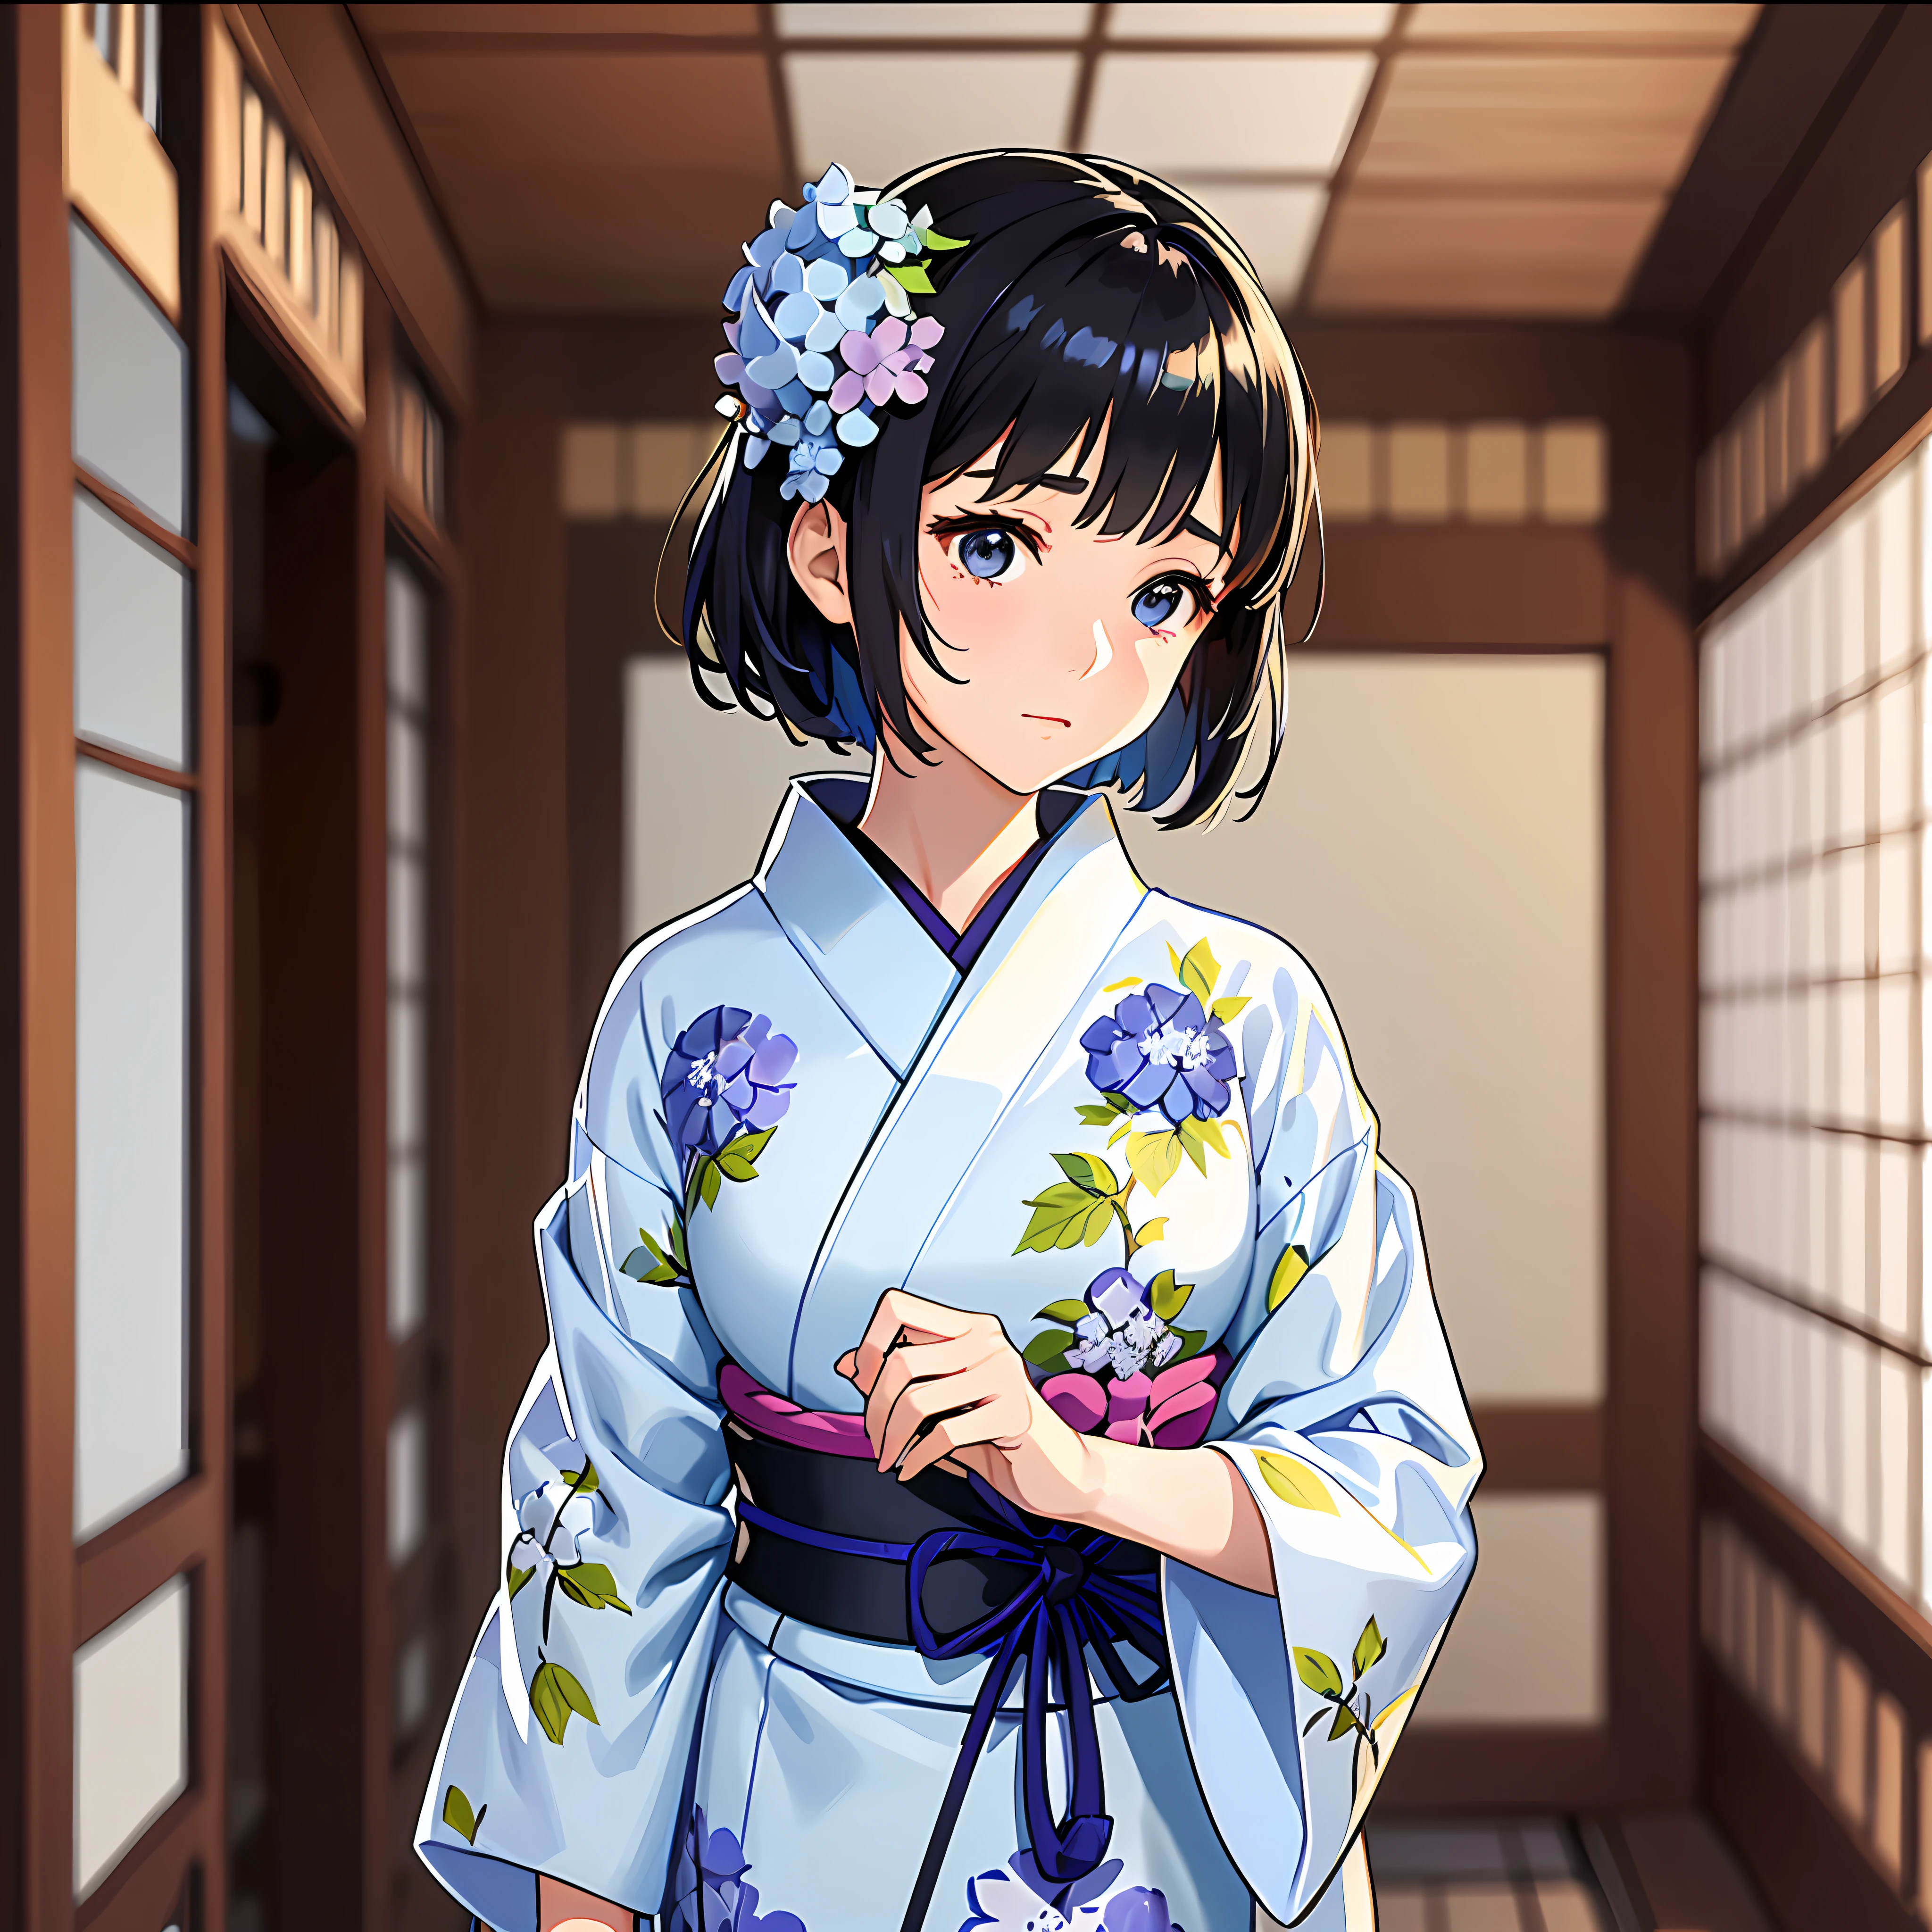 Uma linda garota que exala uma atmosfera pura e organizada fica sobre um fundo branco liso. Ela usa um yukata e tem lindos padrões de hortênsias pintados por todo o corpo.. Ela tem cortes curtos e cabelo preto e fica graciosamente.